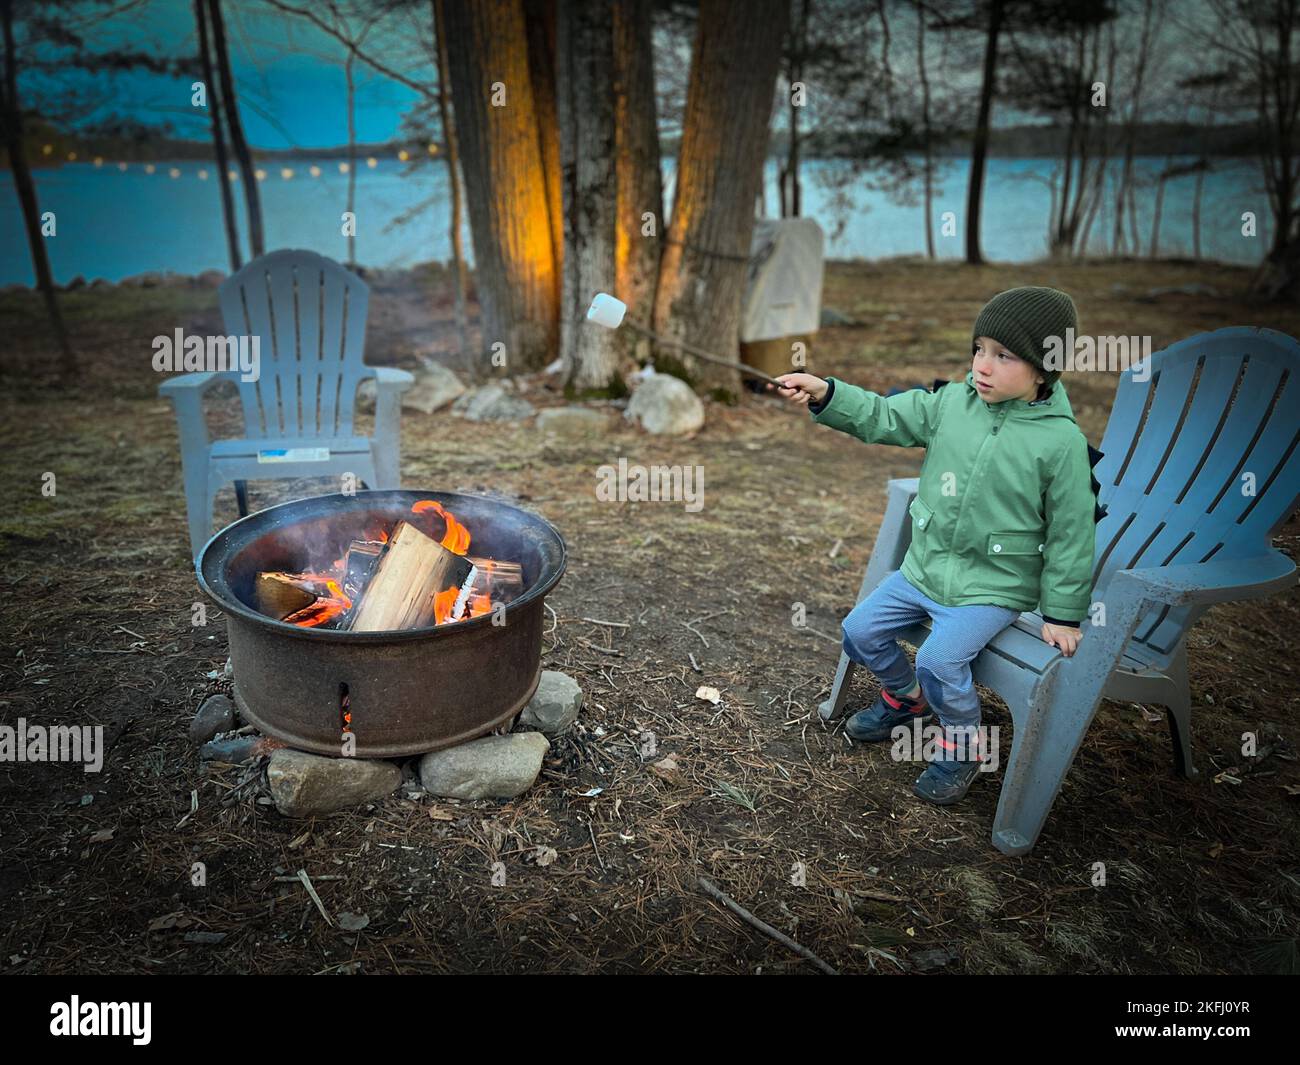 Junge in warmer Kleidung, der während des Sonnenuntergangs im Wald auf einem Adirondack-Stuhl sitzt und über dem Lagerfeuer Sumpflaibe röstet Stockfoto